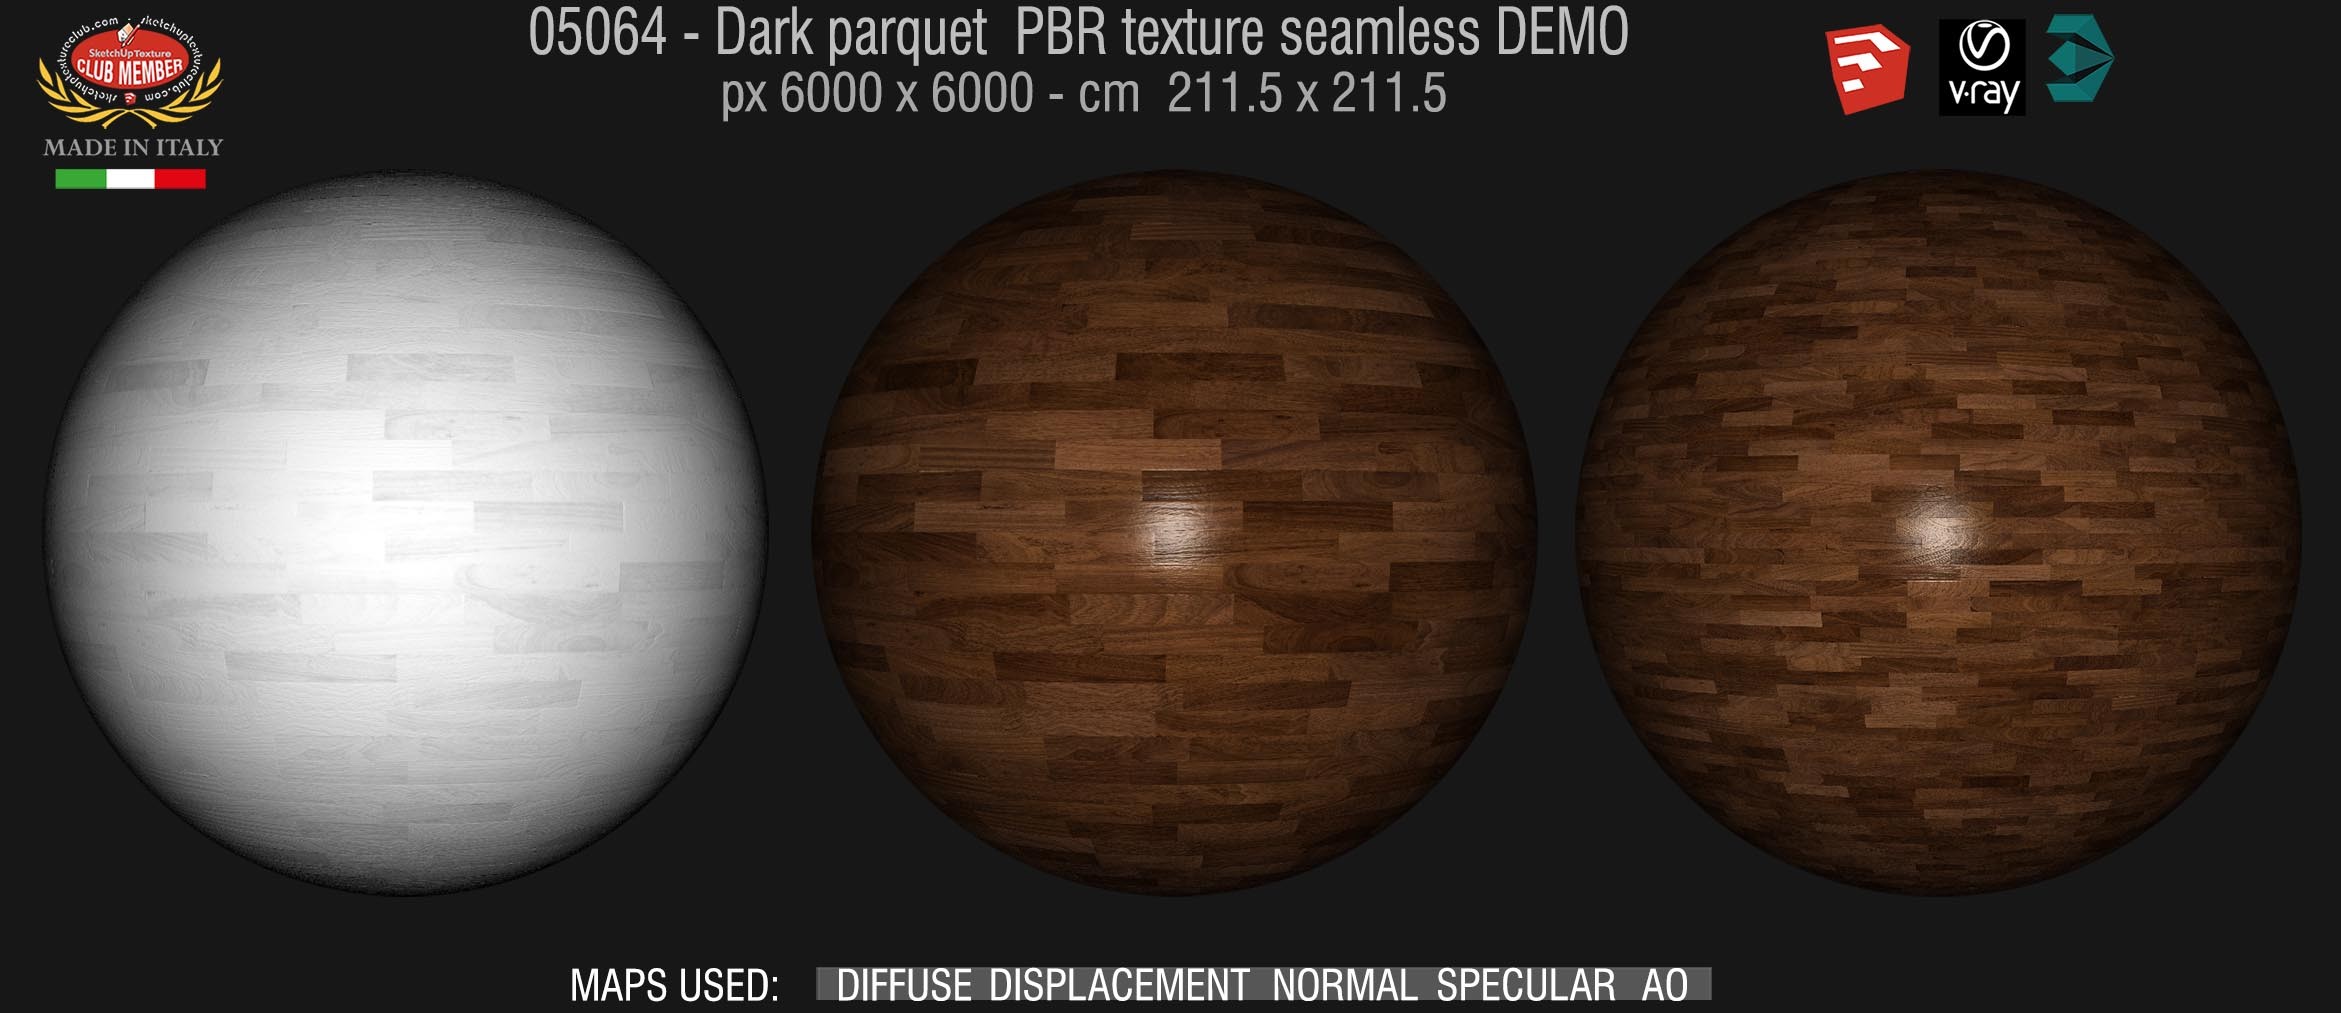 05084 Dark parquet PBR texture seamless DEMO